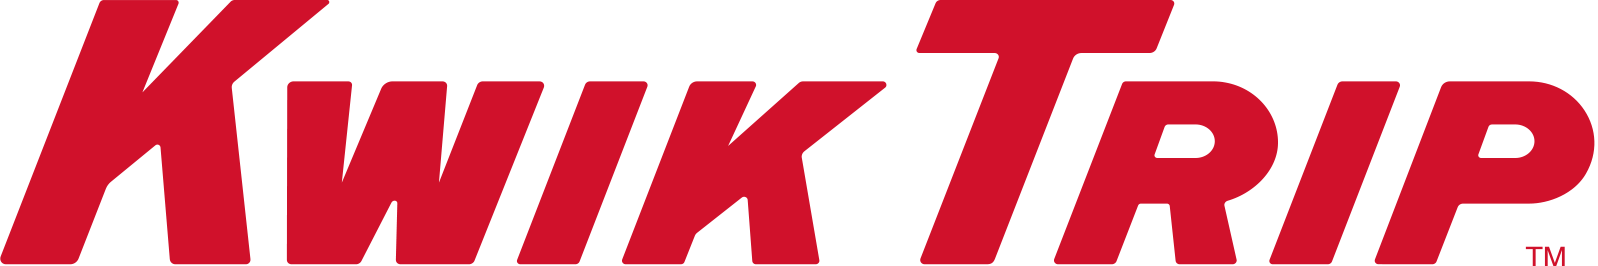 Kwik Trip Logo_Red.png